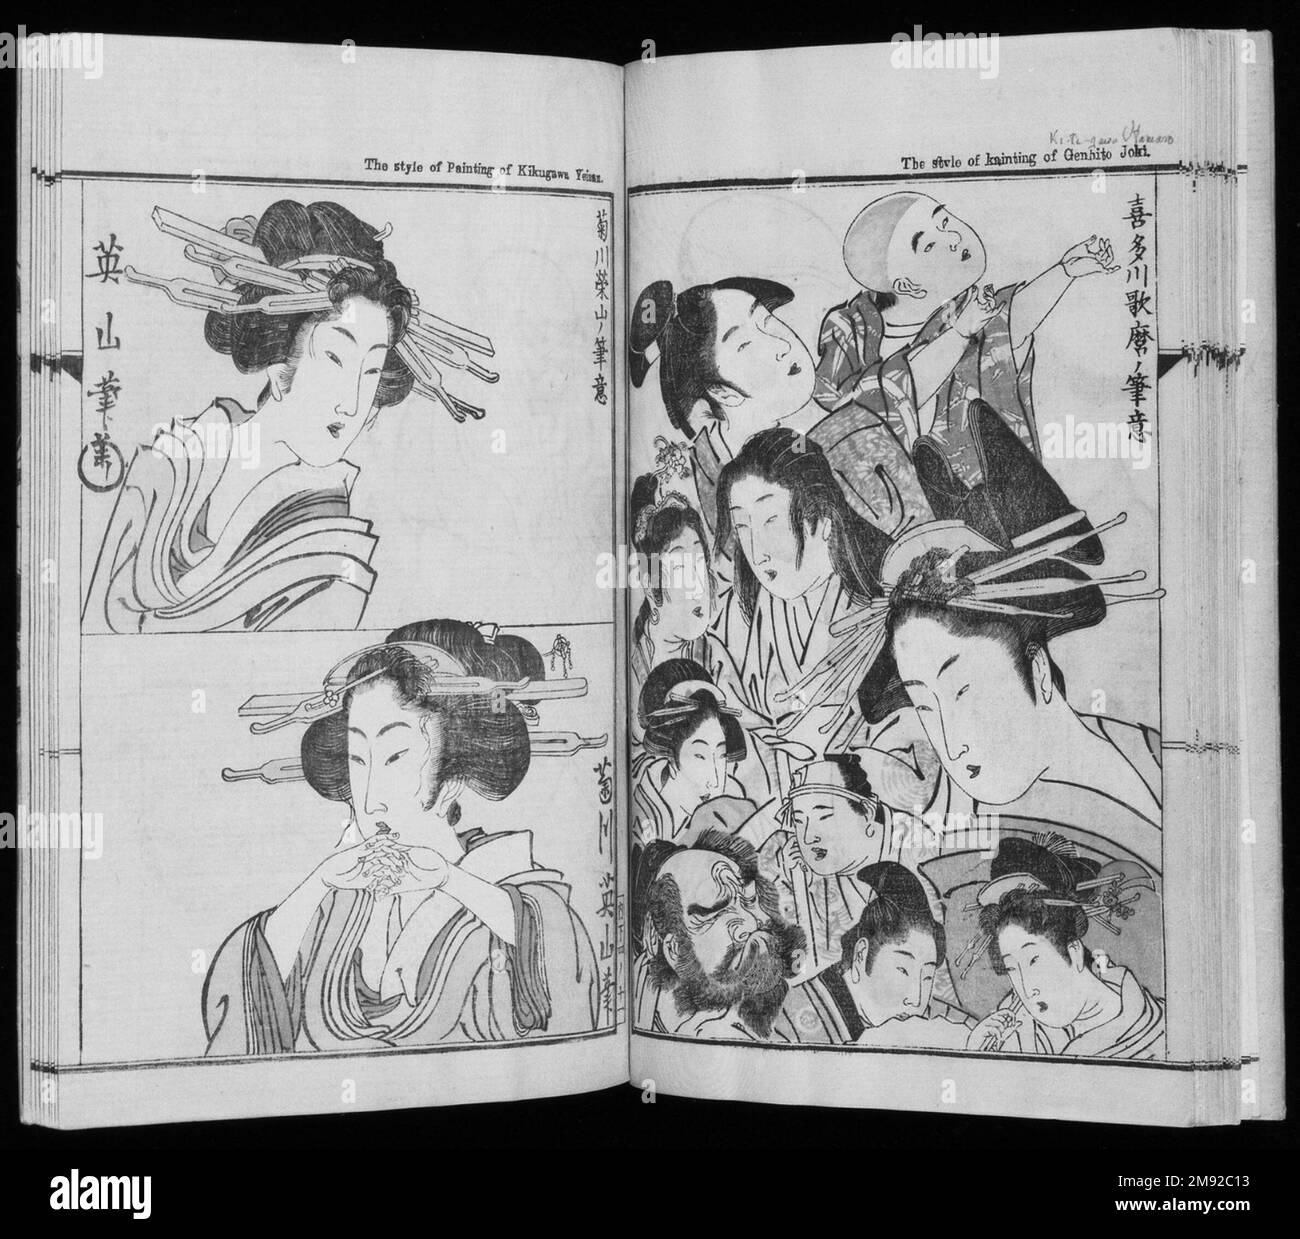 Kyosai Kadan Nihen (Pictorial Accounts of Kyosai), parte II, Volume 3 Kawanabe Kyosai (giapponese, 1831-1889). Kyosai Kadan Nihen (Pictorial Accounts of Kyosai), parte II, Volume 3, 1887. Inchiostro e colori chiari sulla carta, 10 1/16 x 6 15/16 pollici (25,6 x 17,6 cm). Kyosai ha studiato molti tipi differenti di pittura e preso in prestito liberamente dalle fonti varie quando genera i suoi propri, disegni innovatori della stampa. Ha condiviso la sua esperienza nella storia dell'arte giapponese nel suo trattato sulla pittura, che offre un'analisi di vari stili di pittura e scuole, nonché discussioni sul suo posto all'interno di quelle tradizioni. Il v Foto Stock